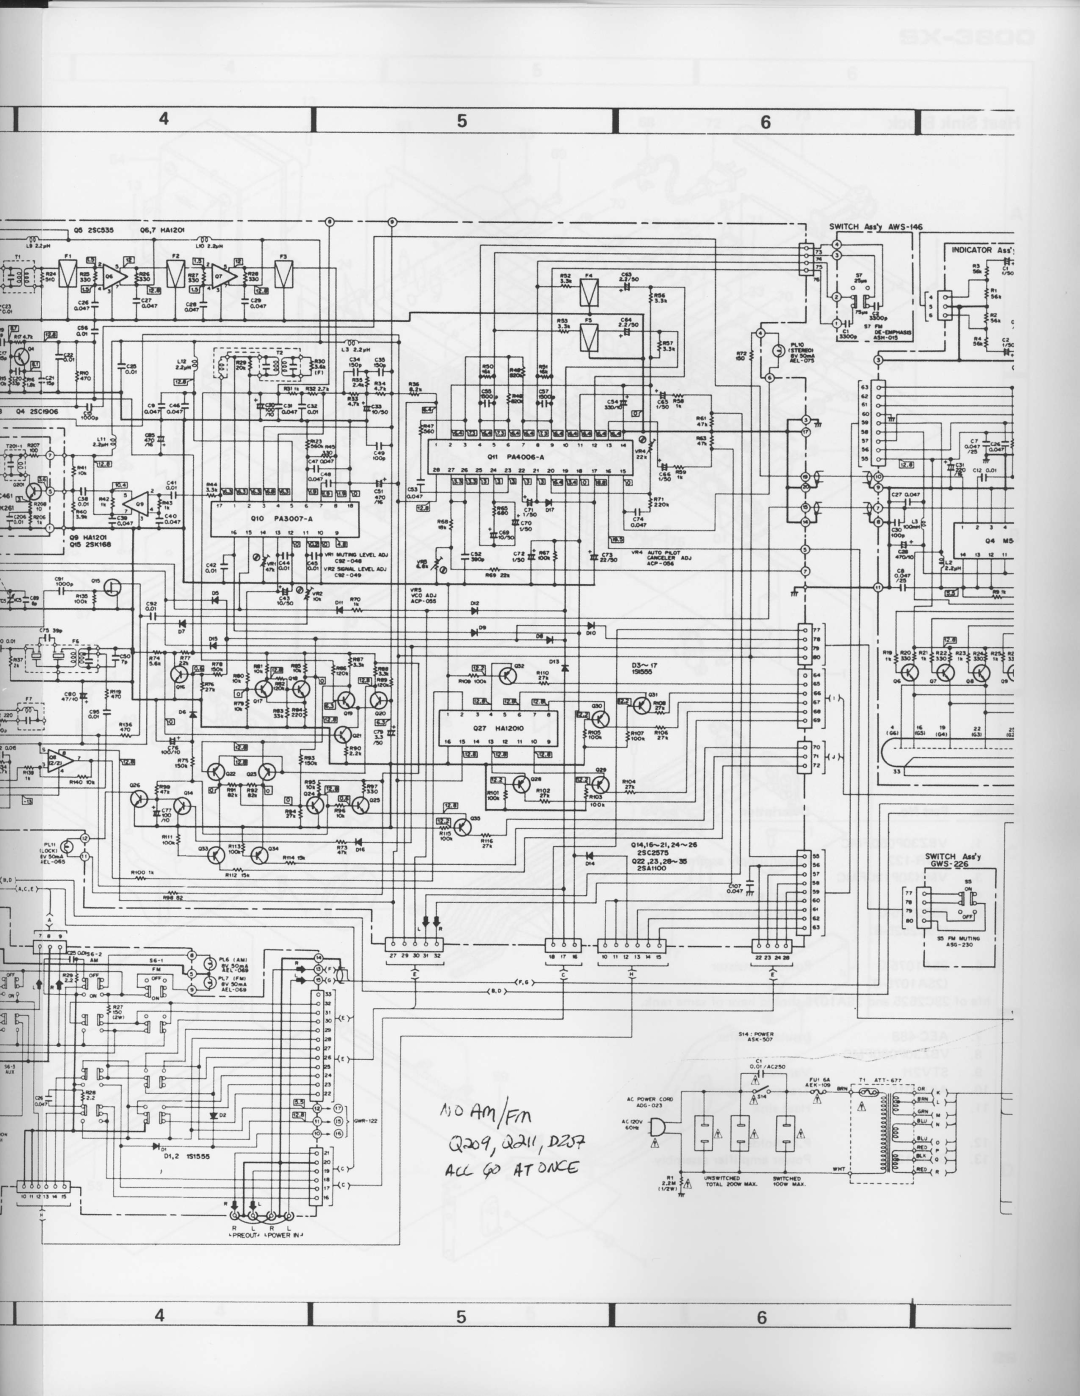 Pioneer SX-3800 manual r,o&4f7rn, Q&?tA tlDzrT 4u- @ *ronce 